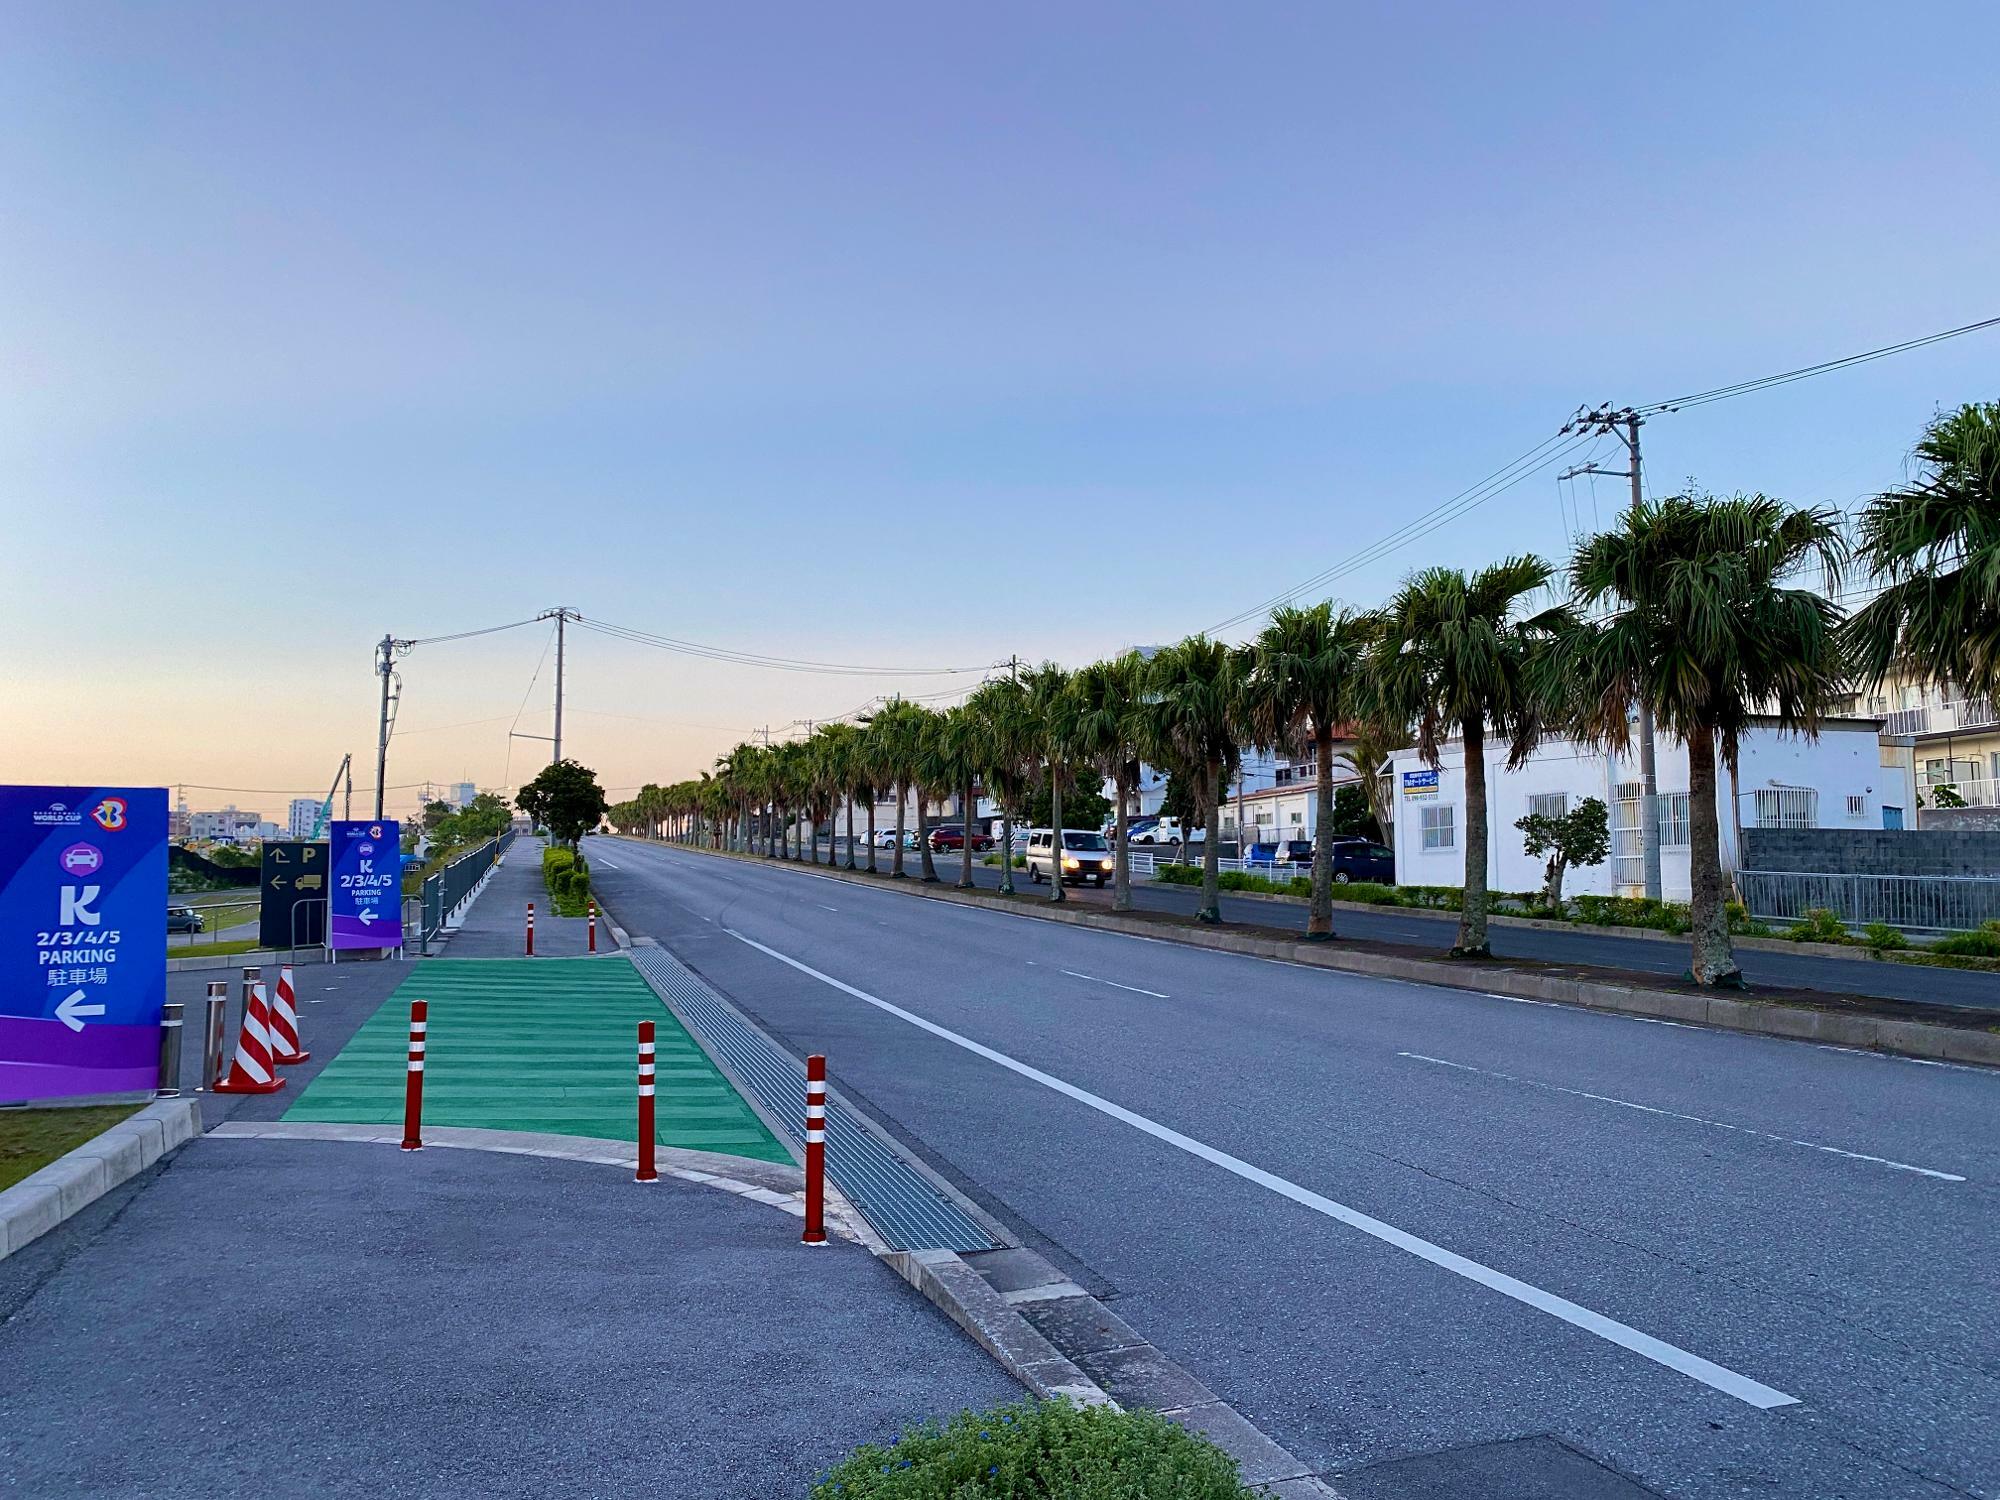 沖縄アリーナ前の信号付近。画像左側に沖縄アリーナ